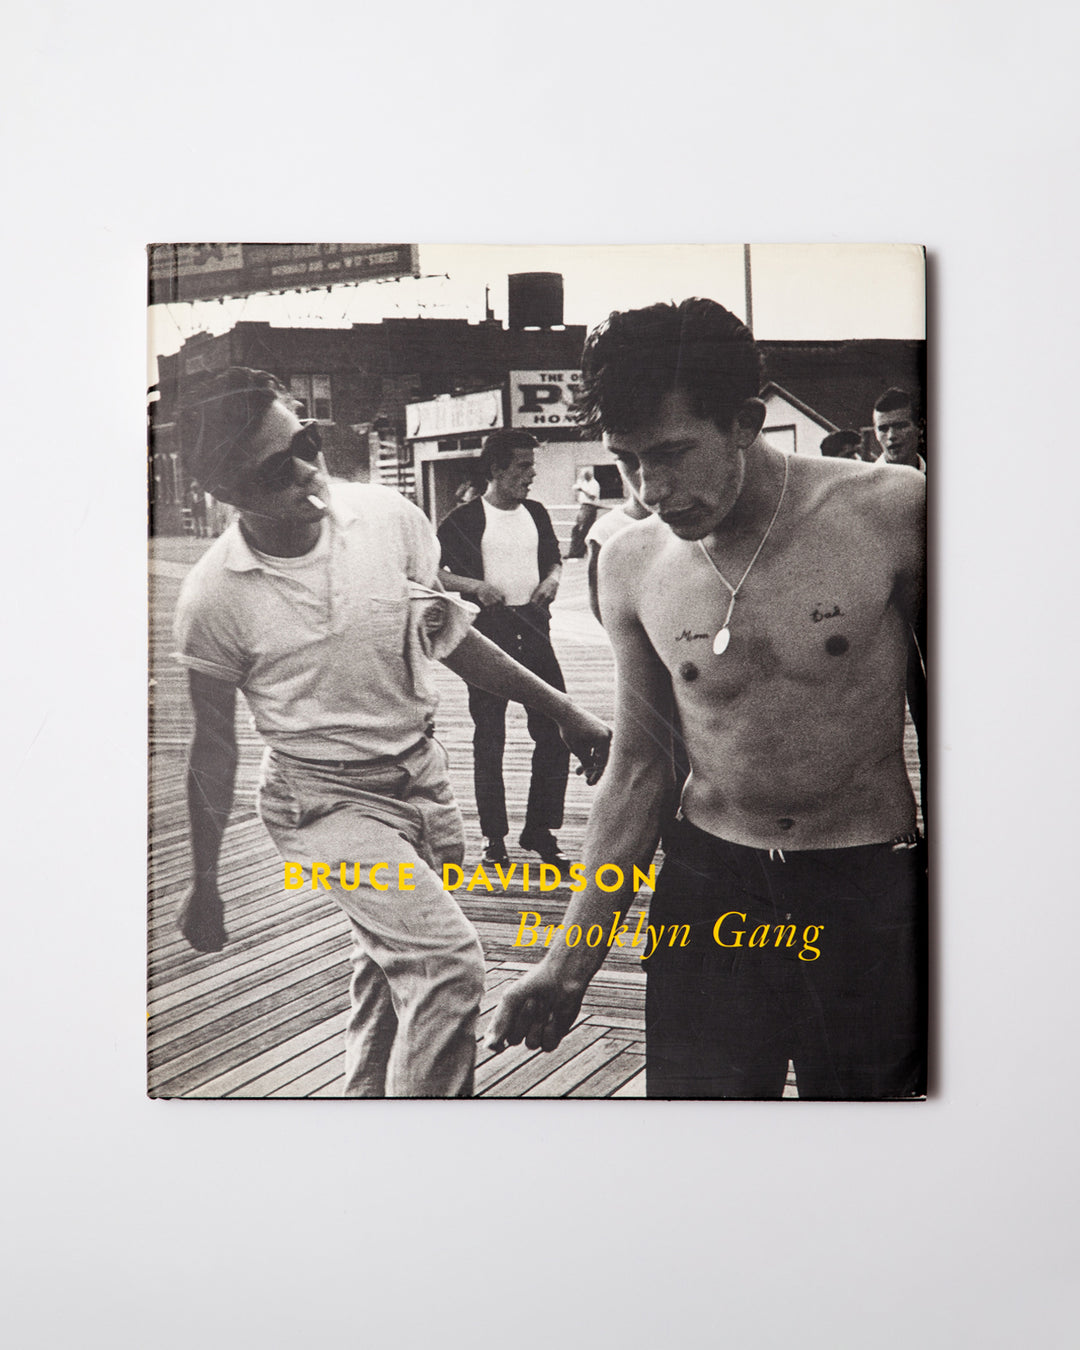 [Singed]Bruce Davidson - Brooklyn Gang: Summer 1959